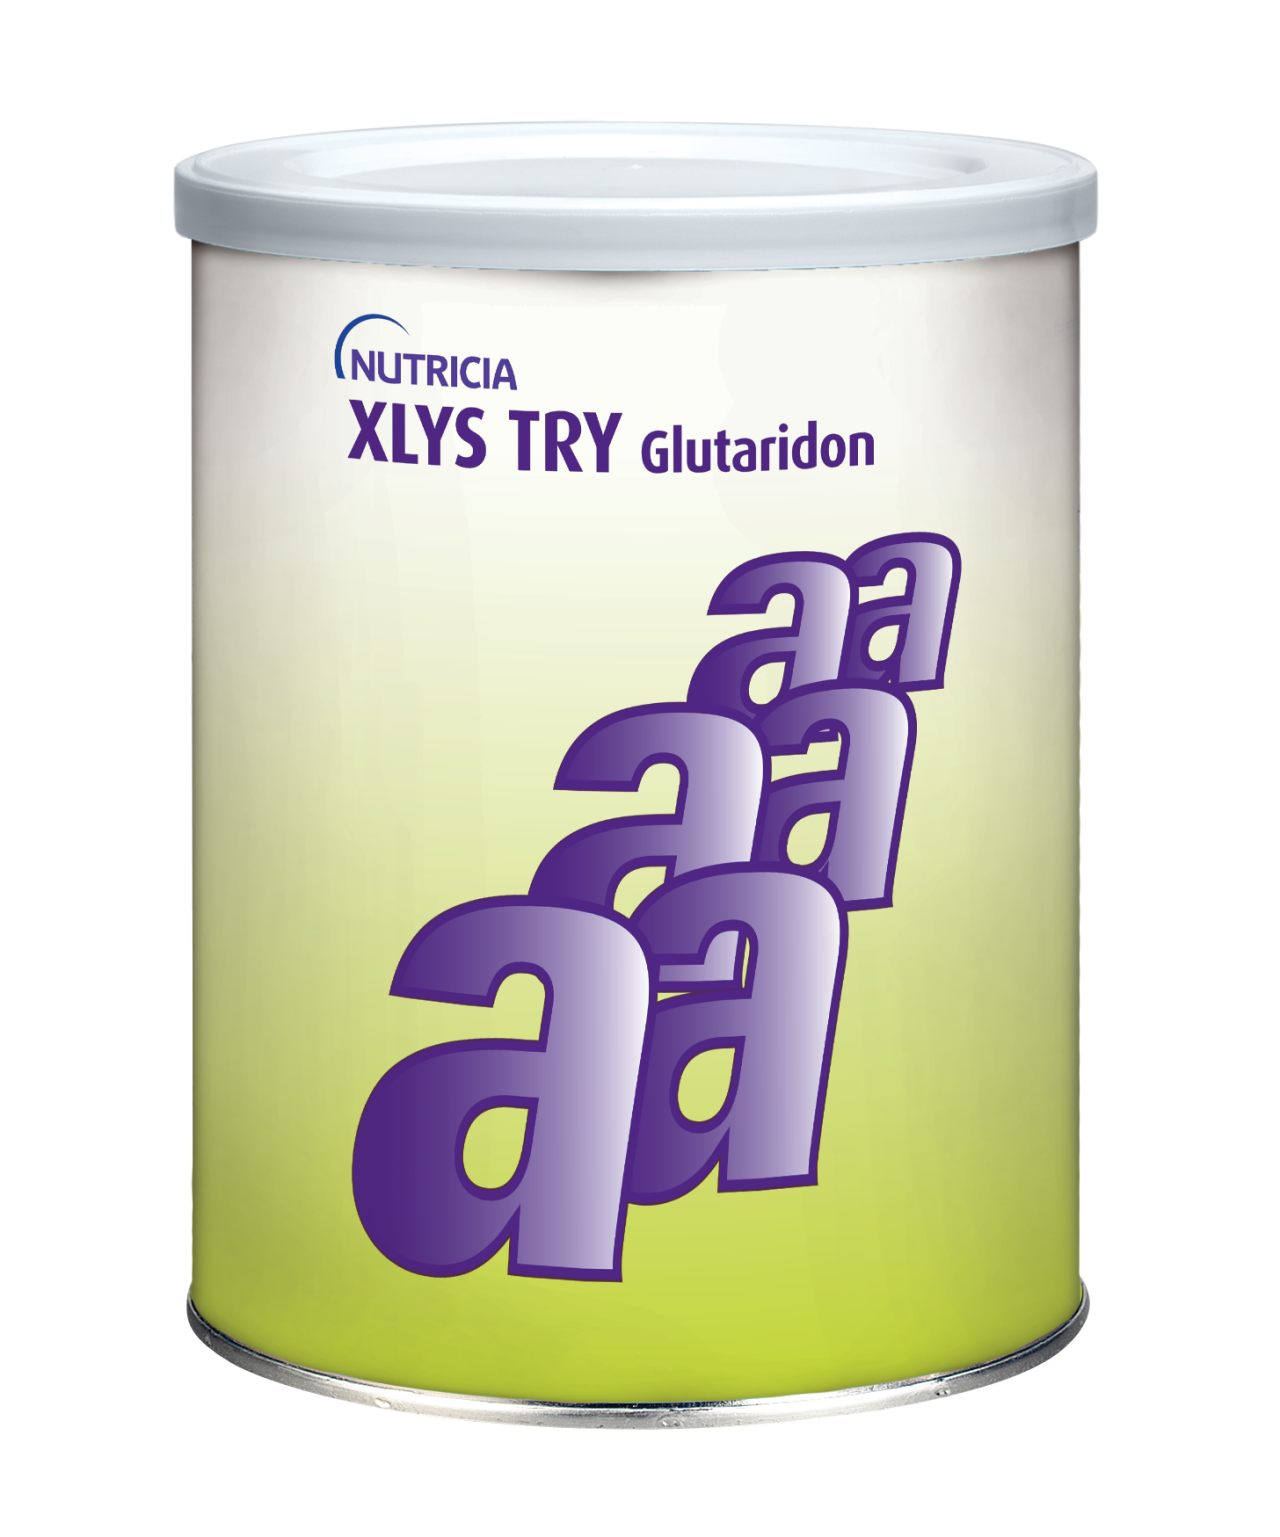 XLYS TRY Glutaridon